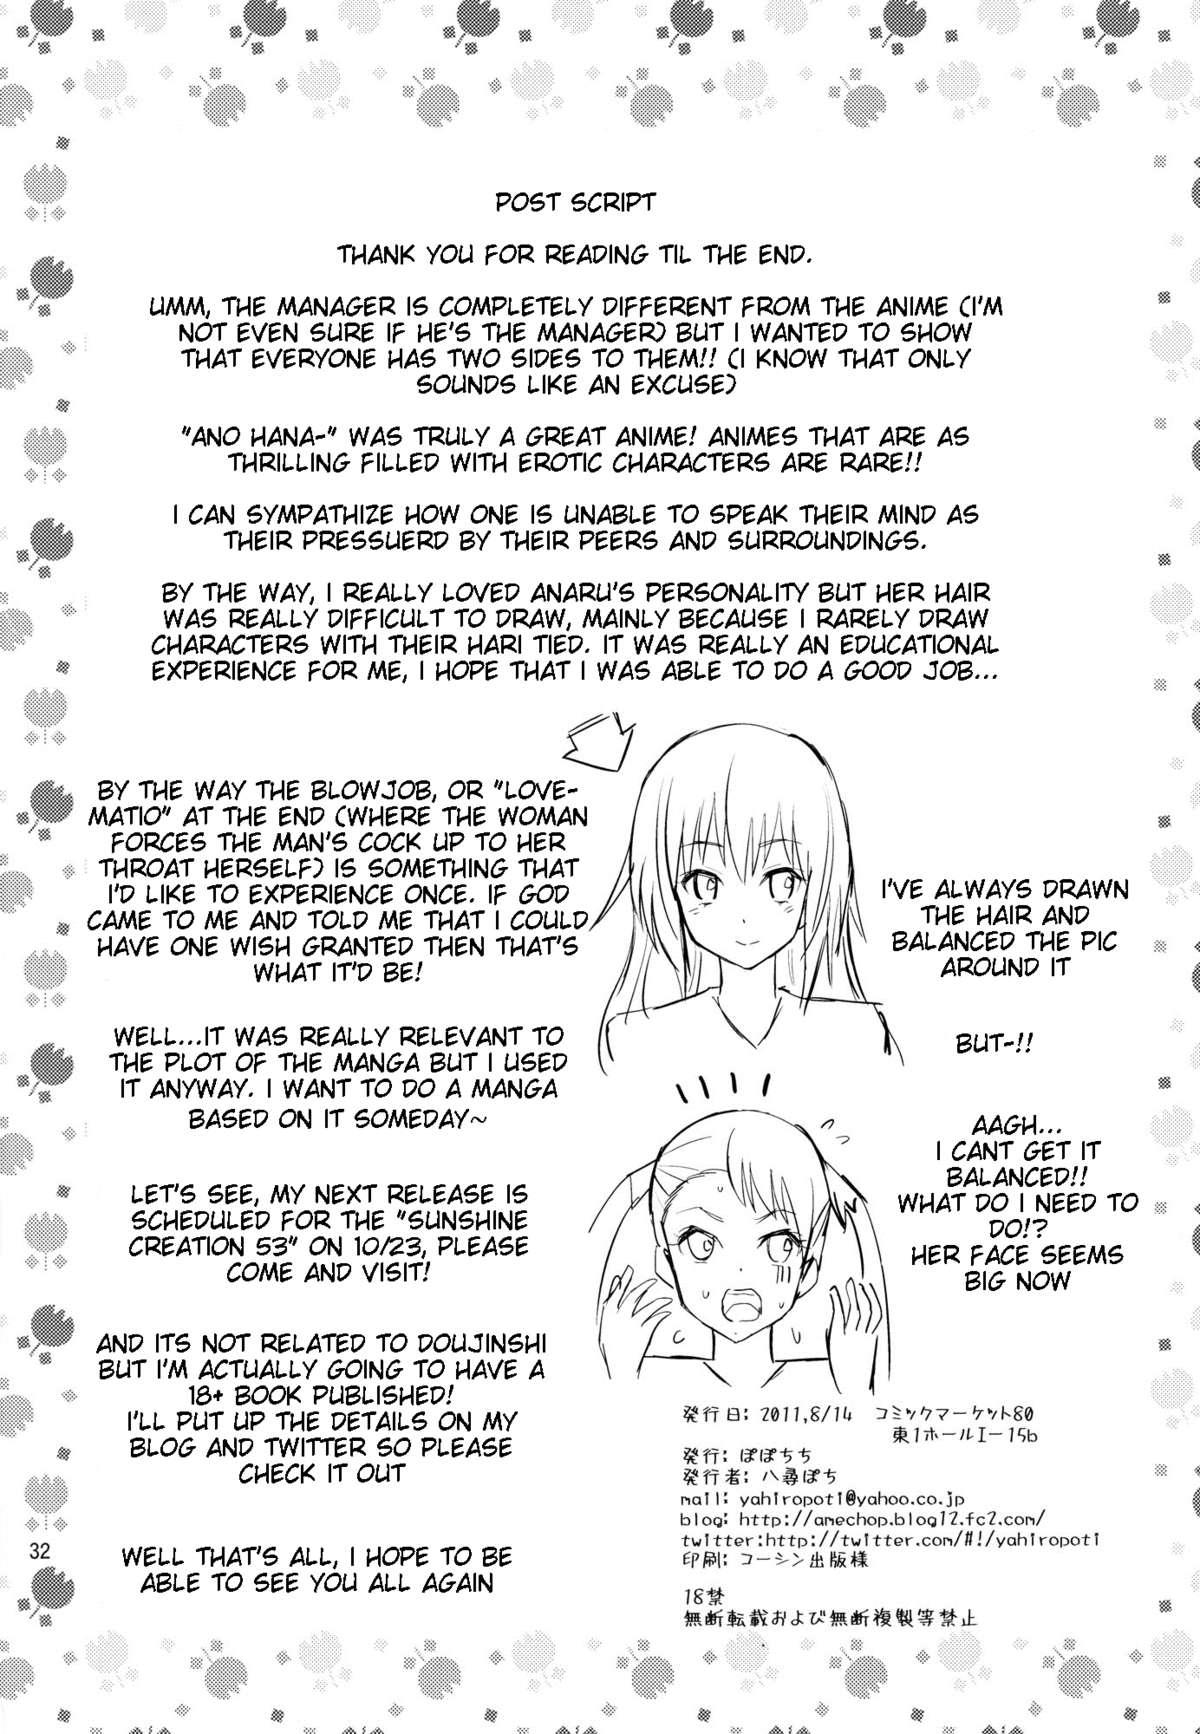 Ano Anaru no Sundome Manga wo Bokutachi wa Mada Shiranai | Ano Anaru - The Netorare Manga We Read That Day 30